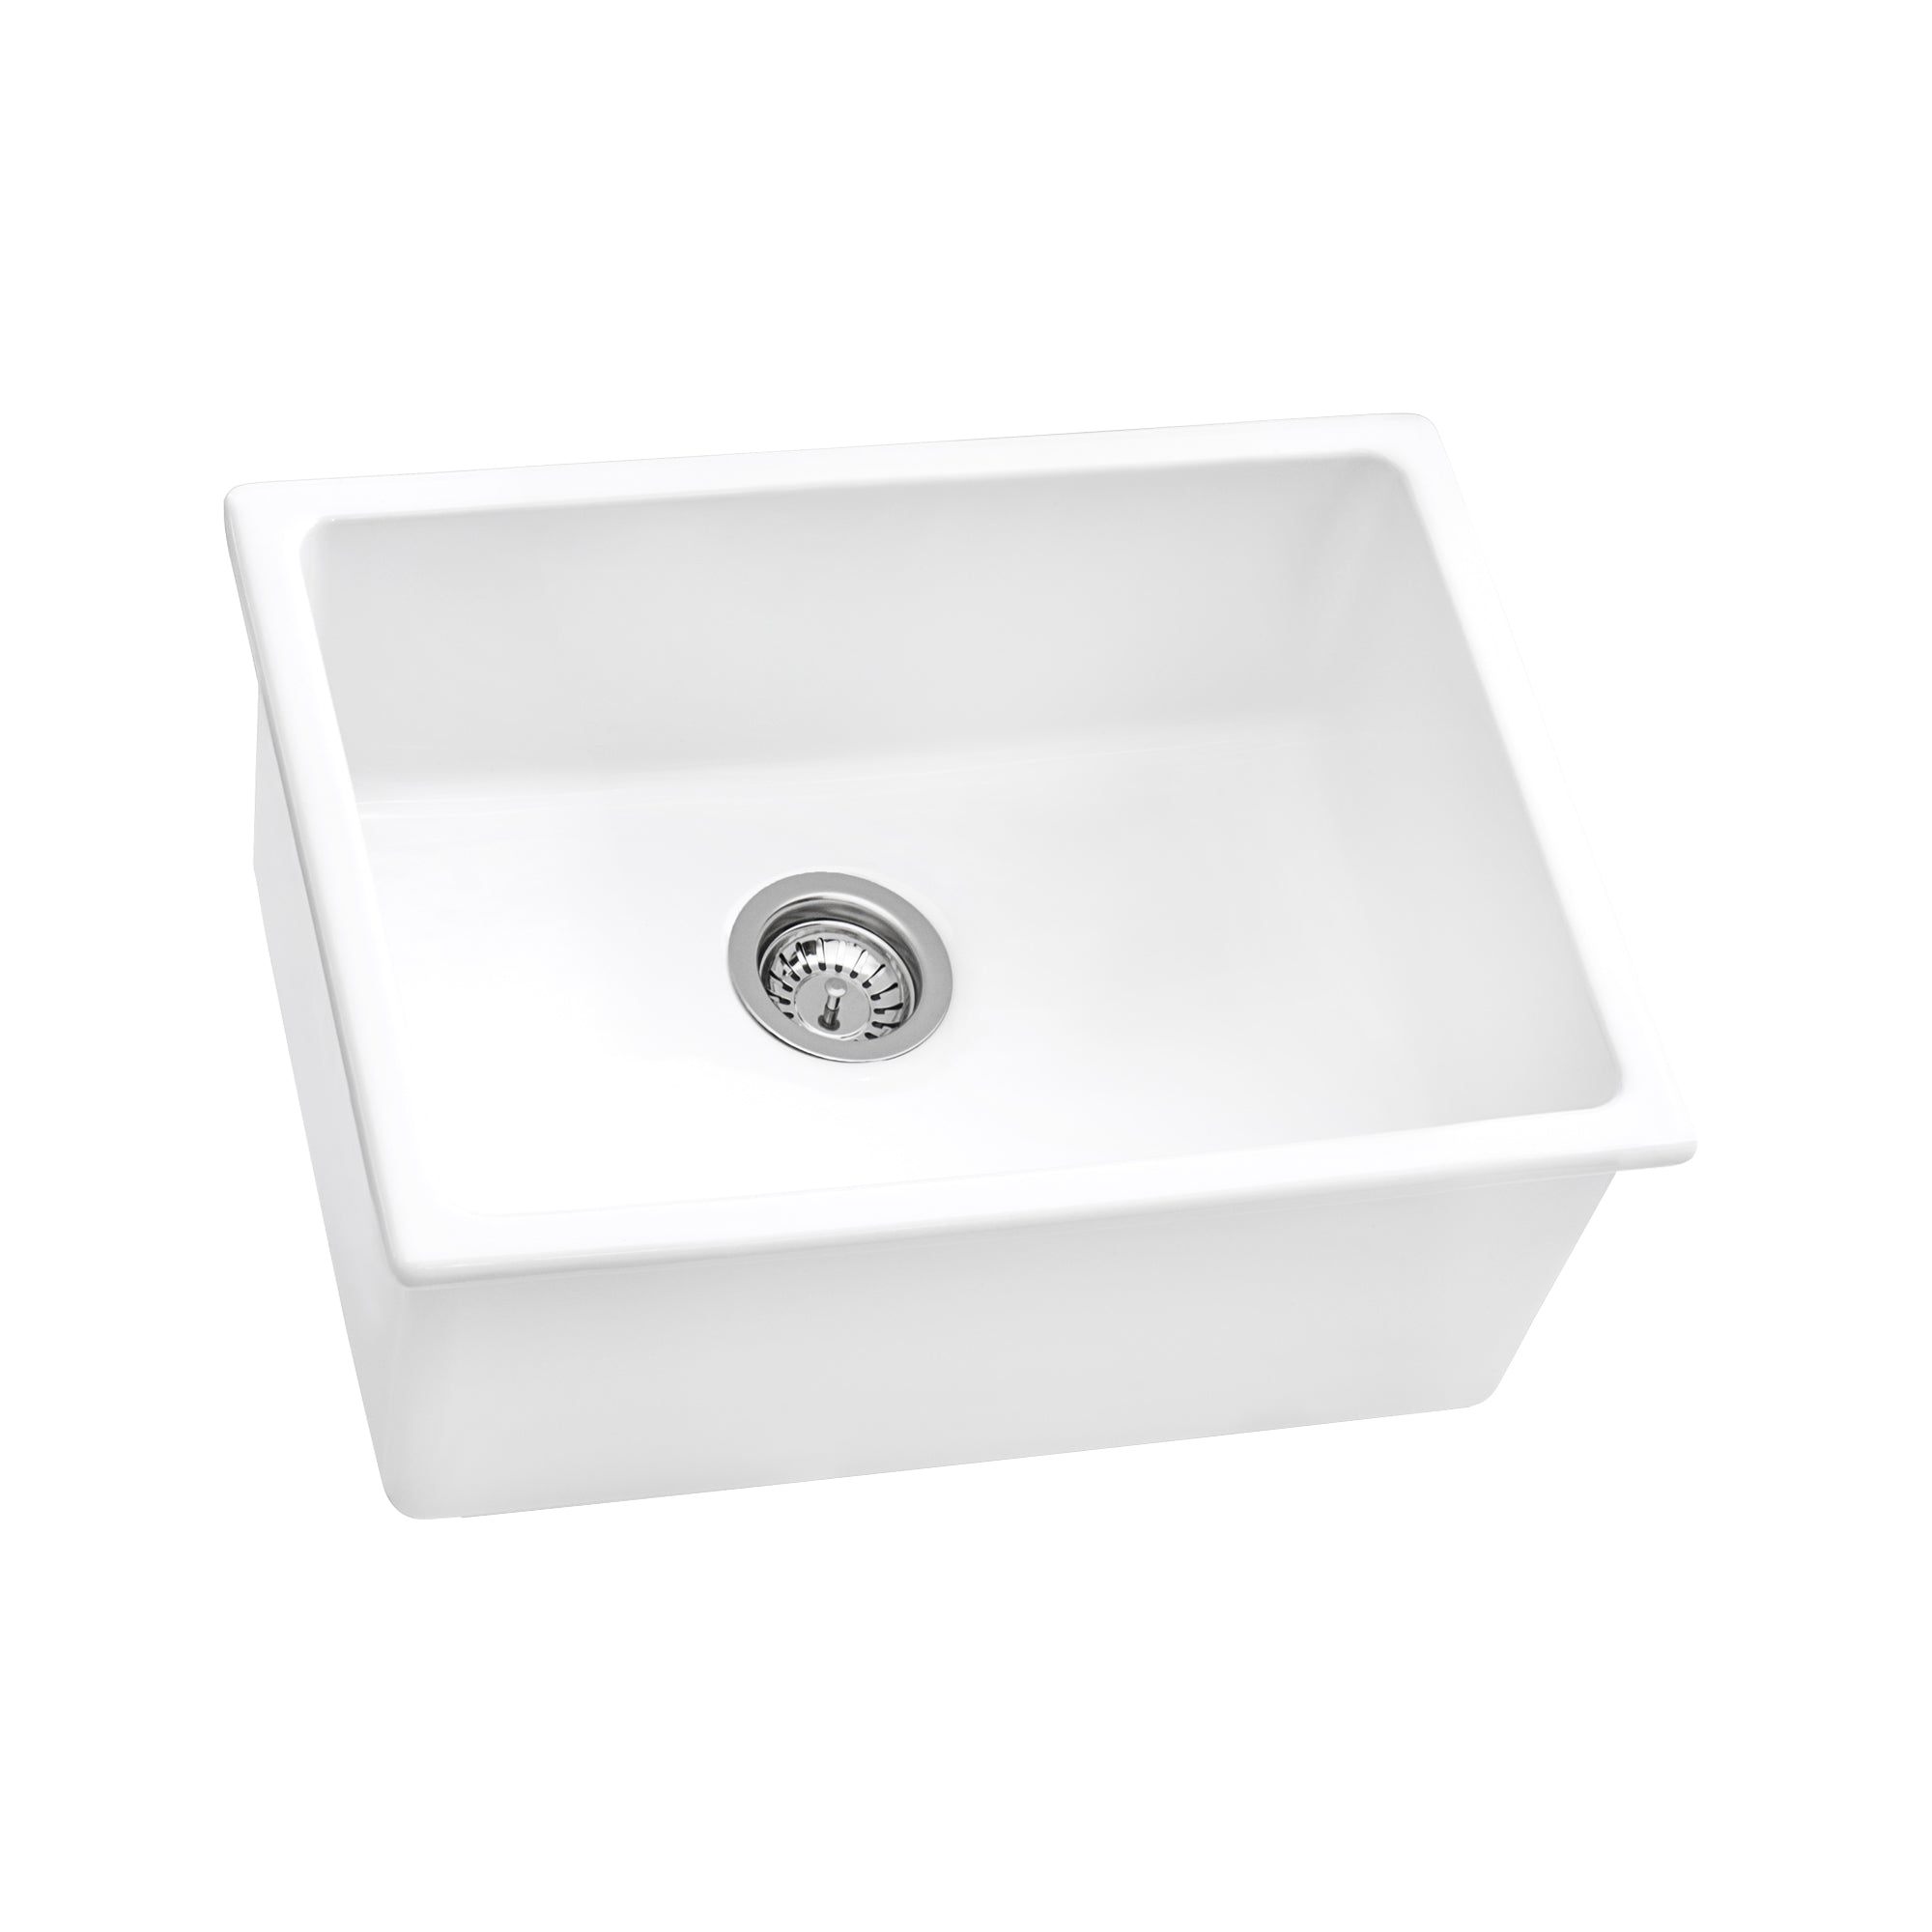 Ruvati 24" Fireclay Undermount / Topmount Single Bowl Kitchen Sink in White